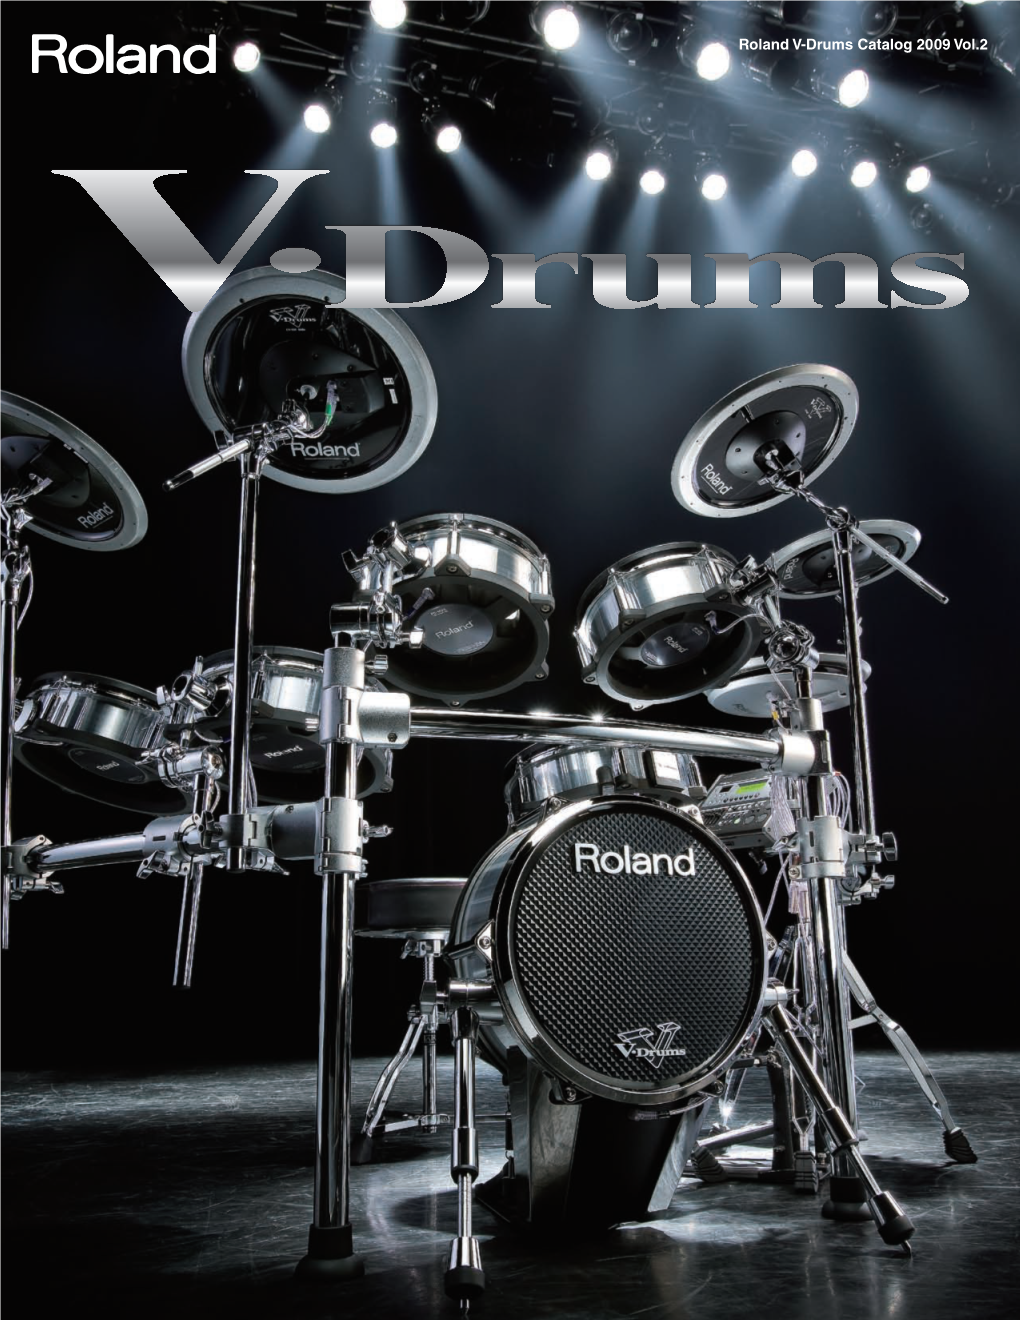 Roland V-Drums Catalog 2009 Vol.2 Explore a New World of Sound and Control